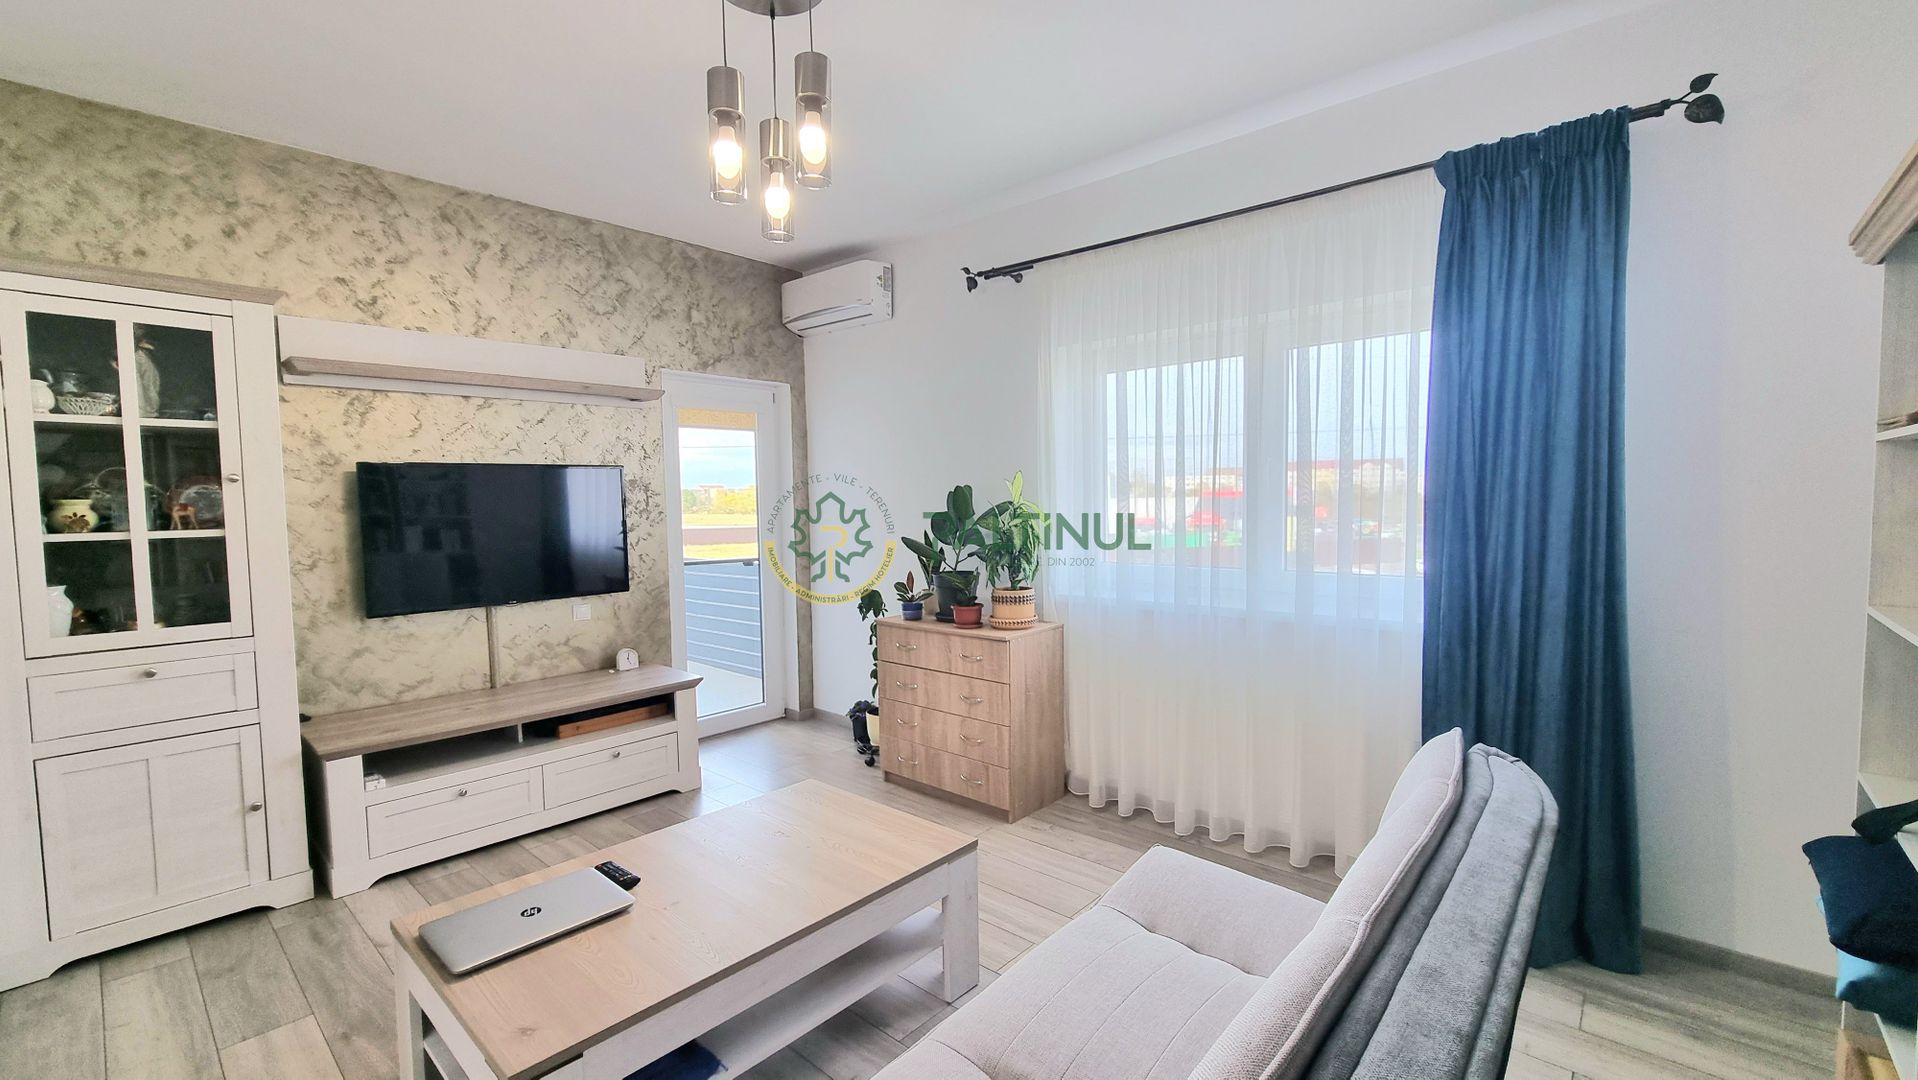 Apartament Decomandat, Et. 2, 3 Camere -Confort si Modernitate